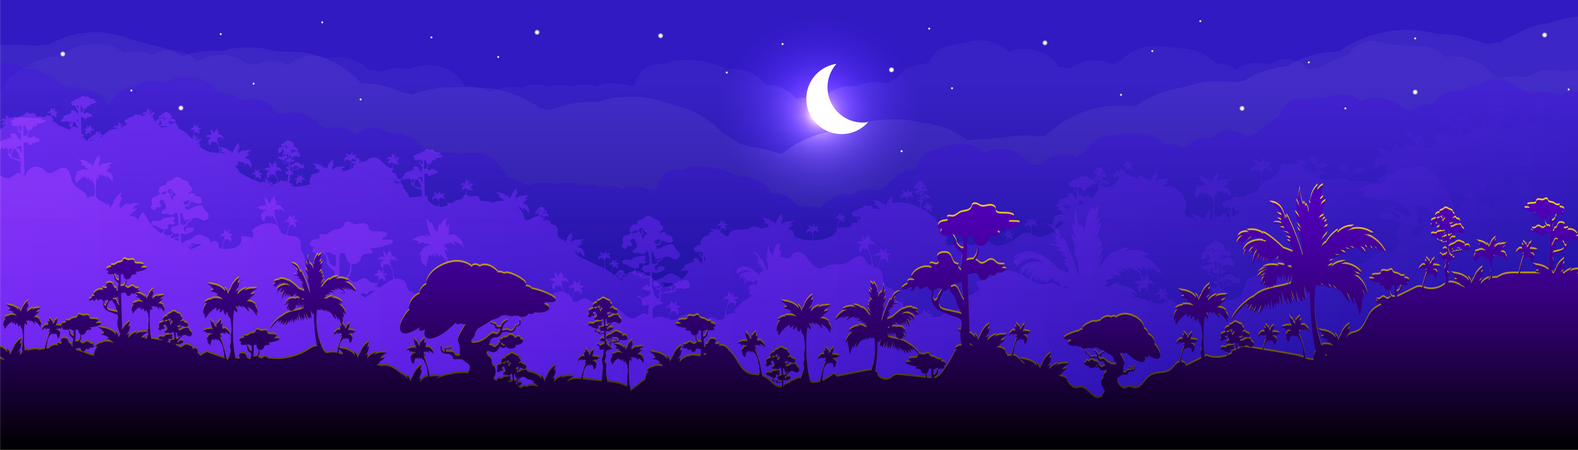 Paysage forestier nocturne dans la jungle  Illustration